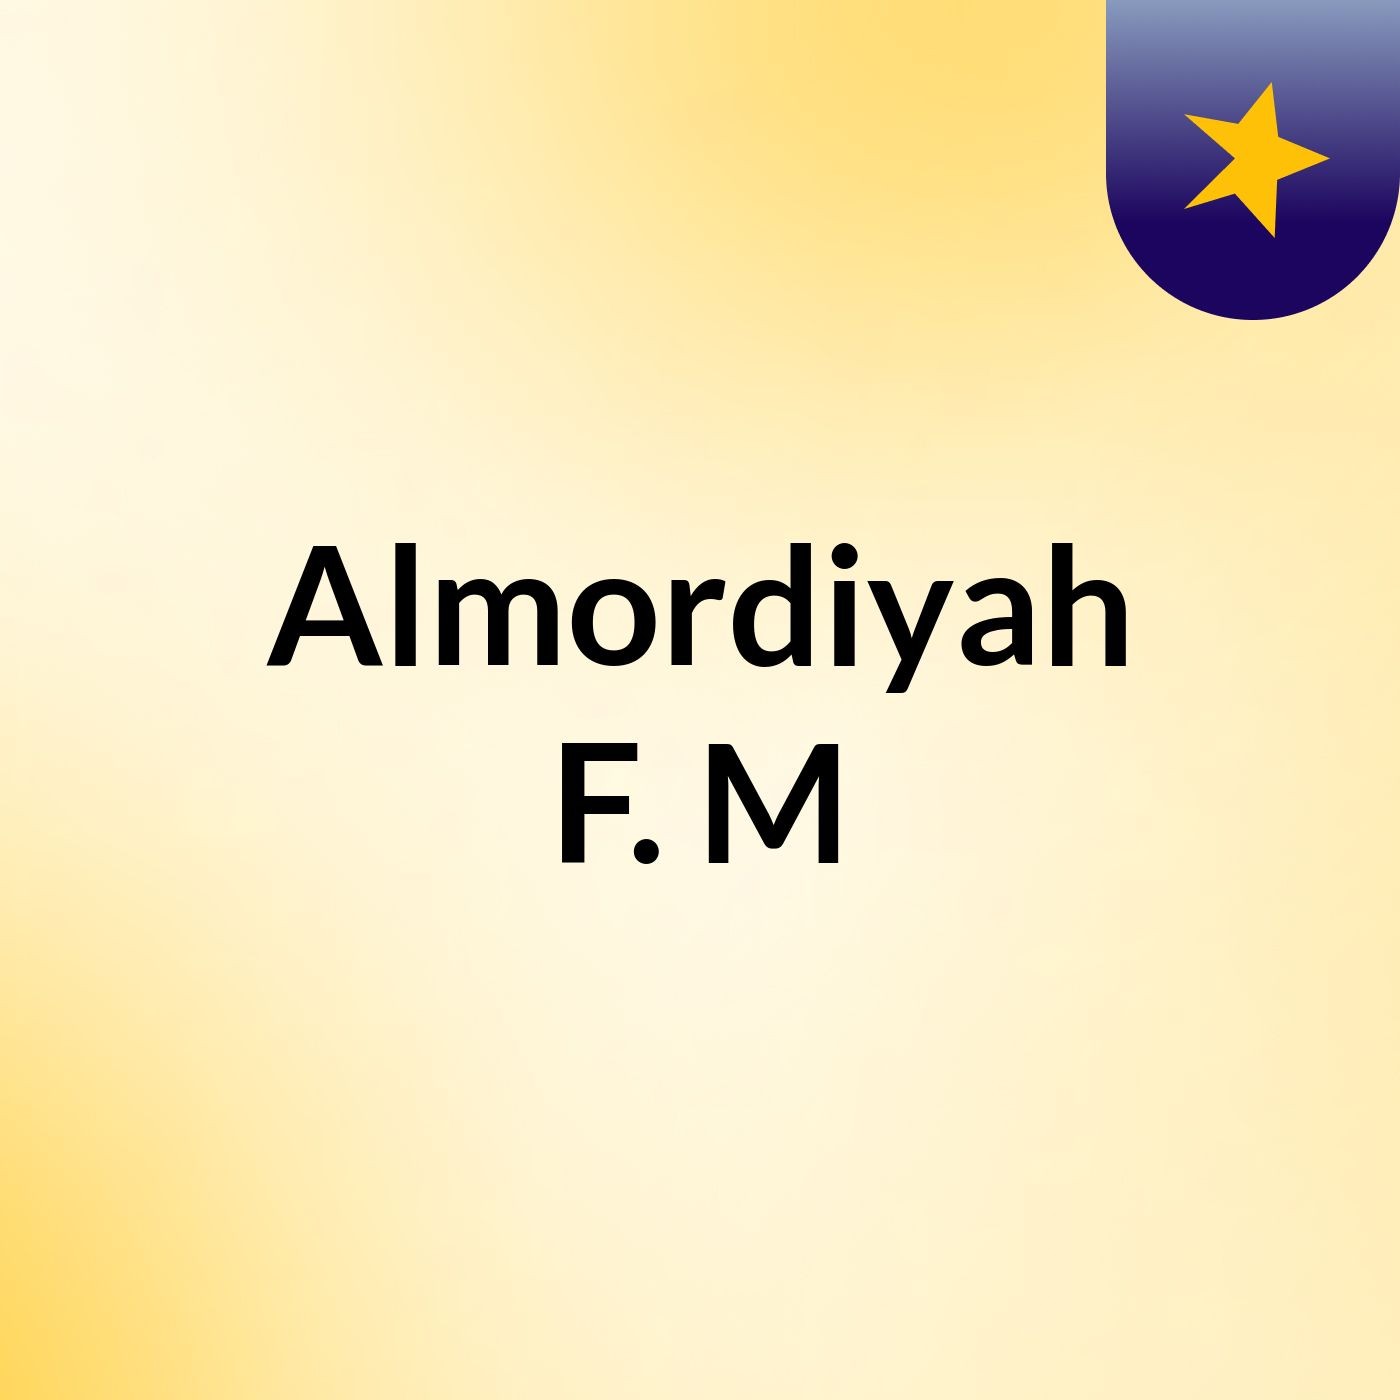 Episode 10 - Almordiyah F. M